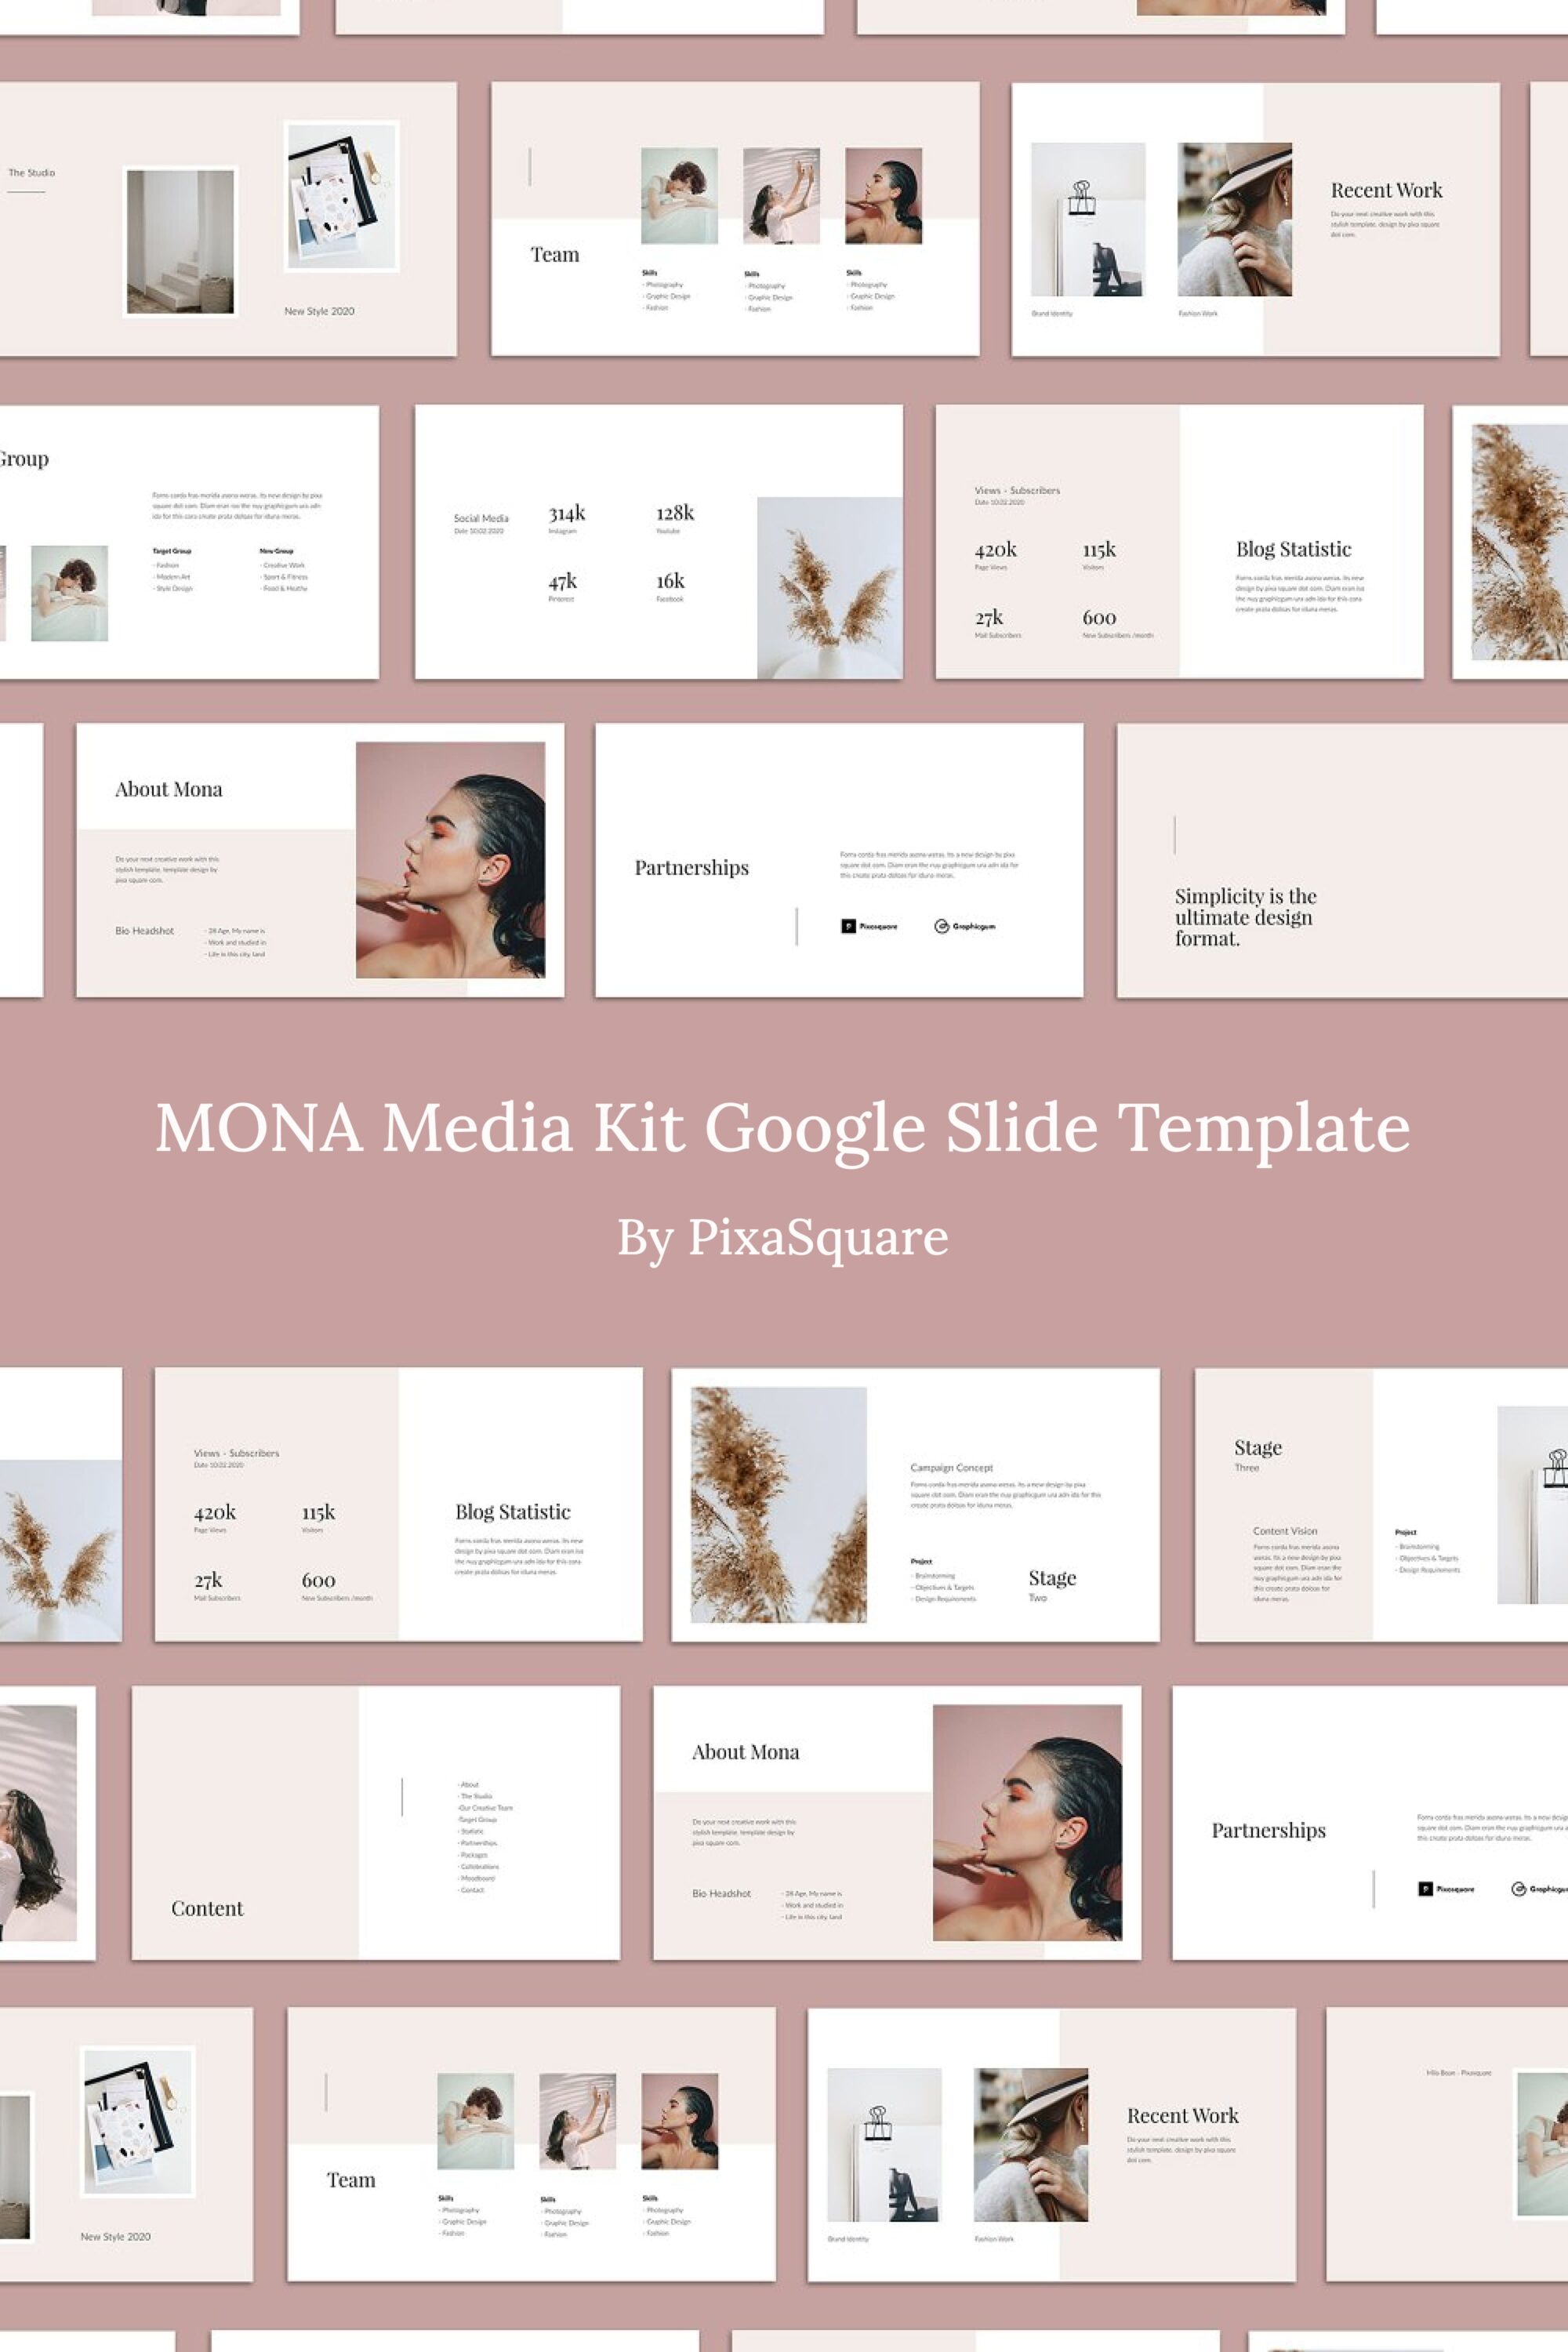 mona media kit google slide template 03